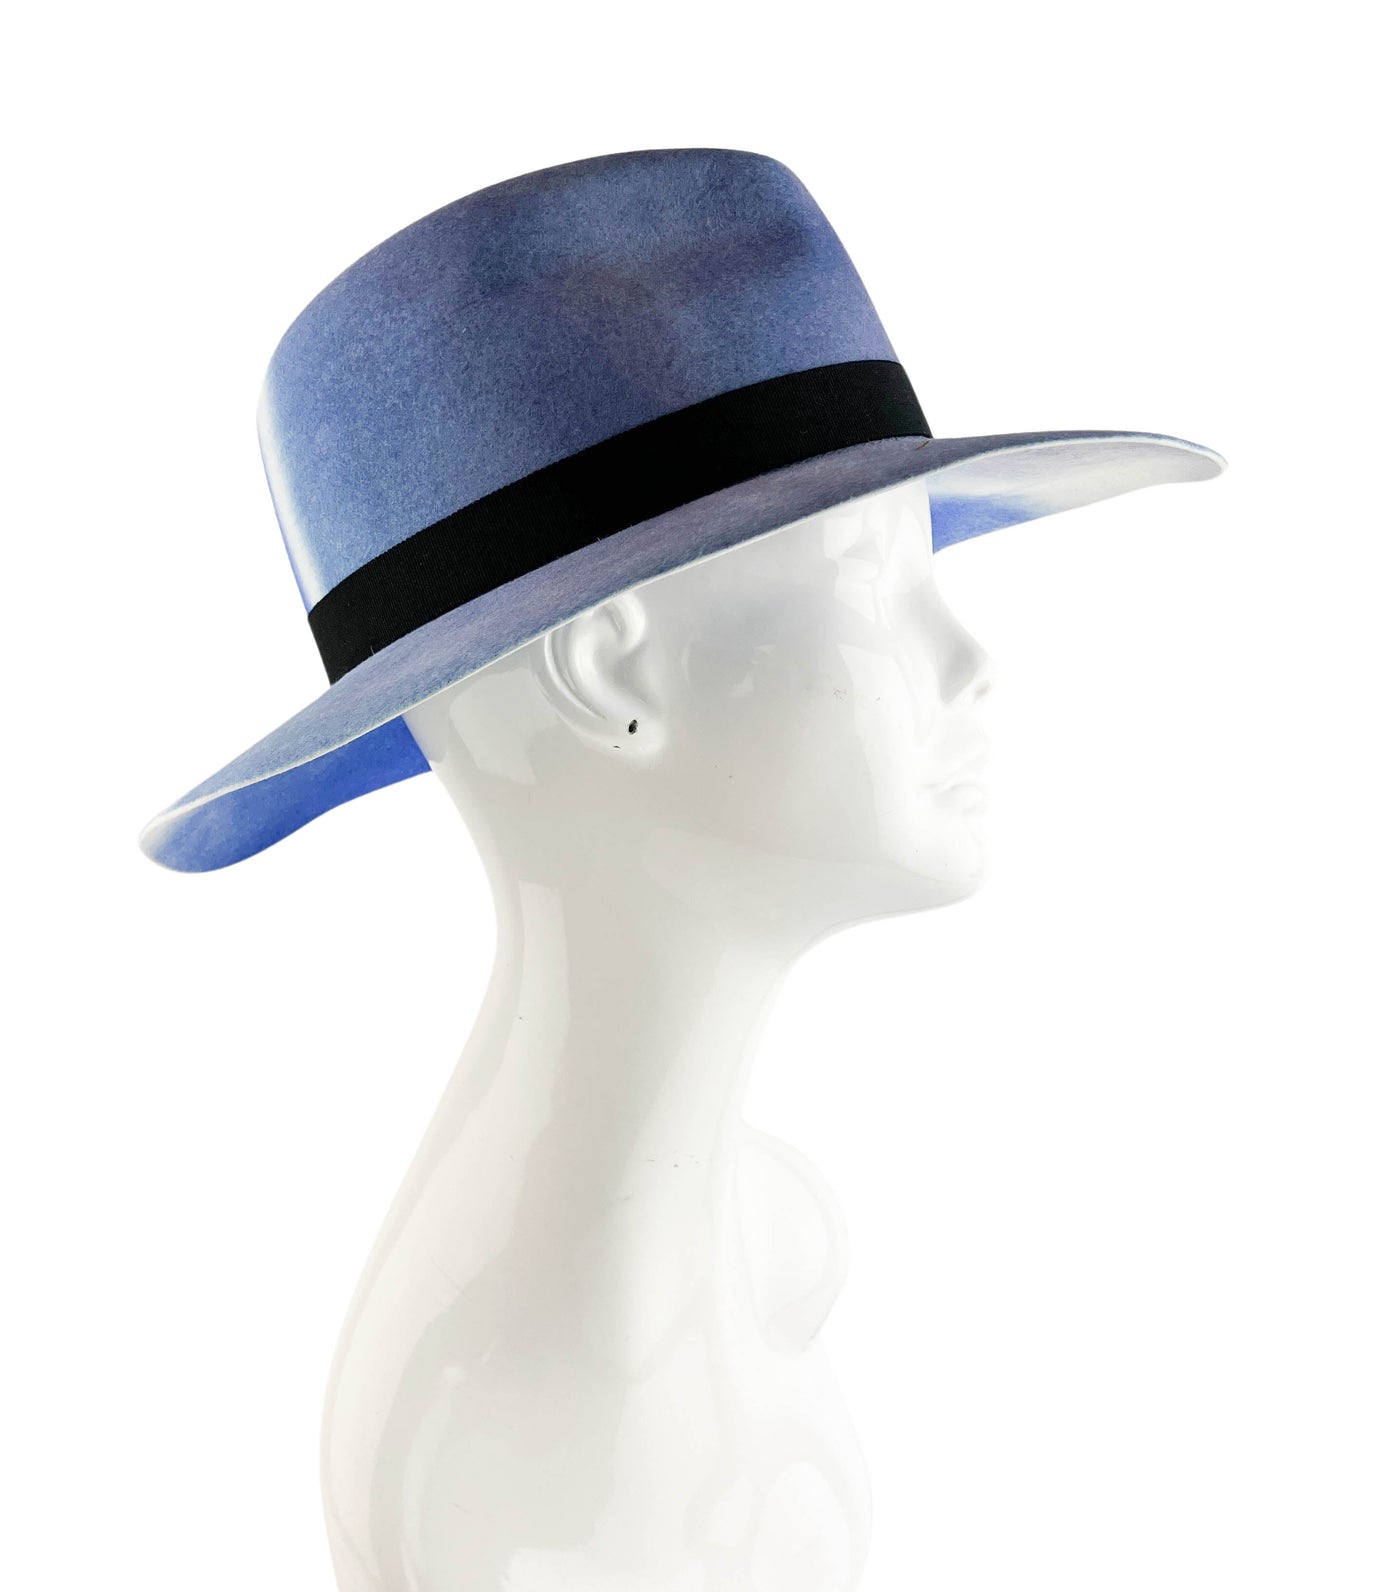 Maison Michel Henrietta Wool Felt Hat in Tie Dye Blue - Discounts on Maison Michel at UAL